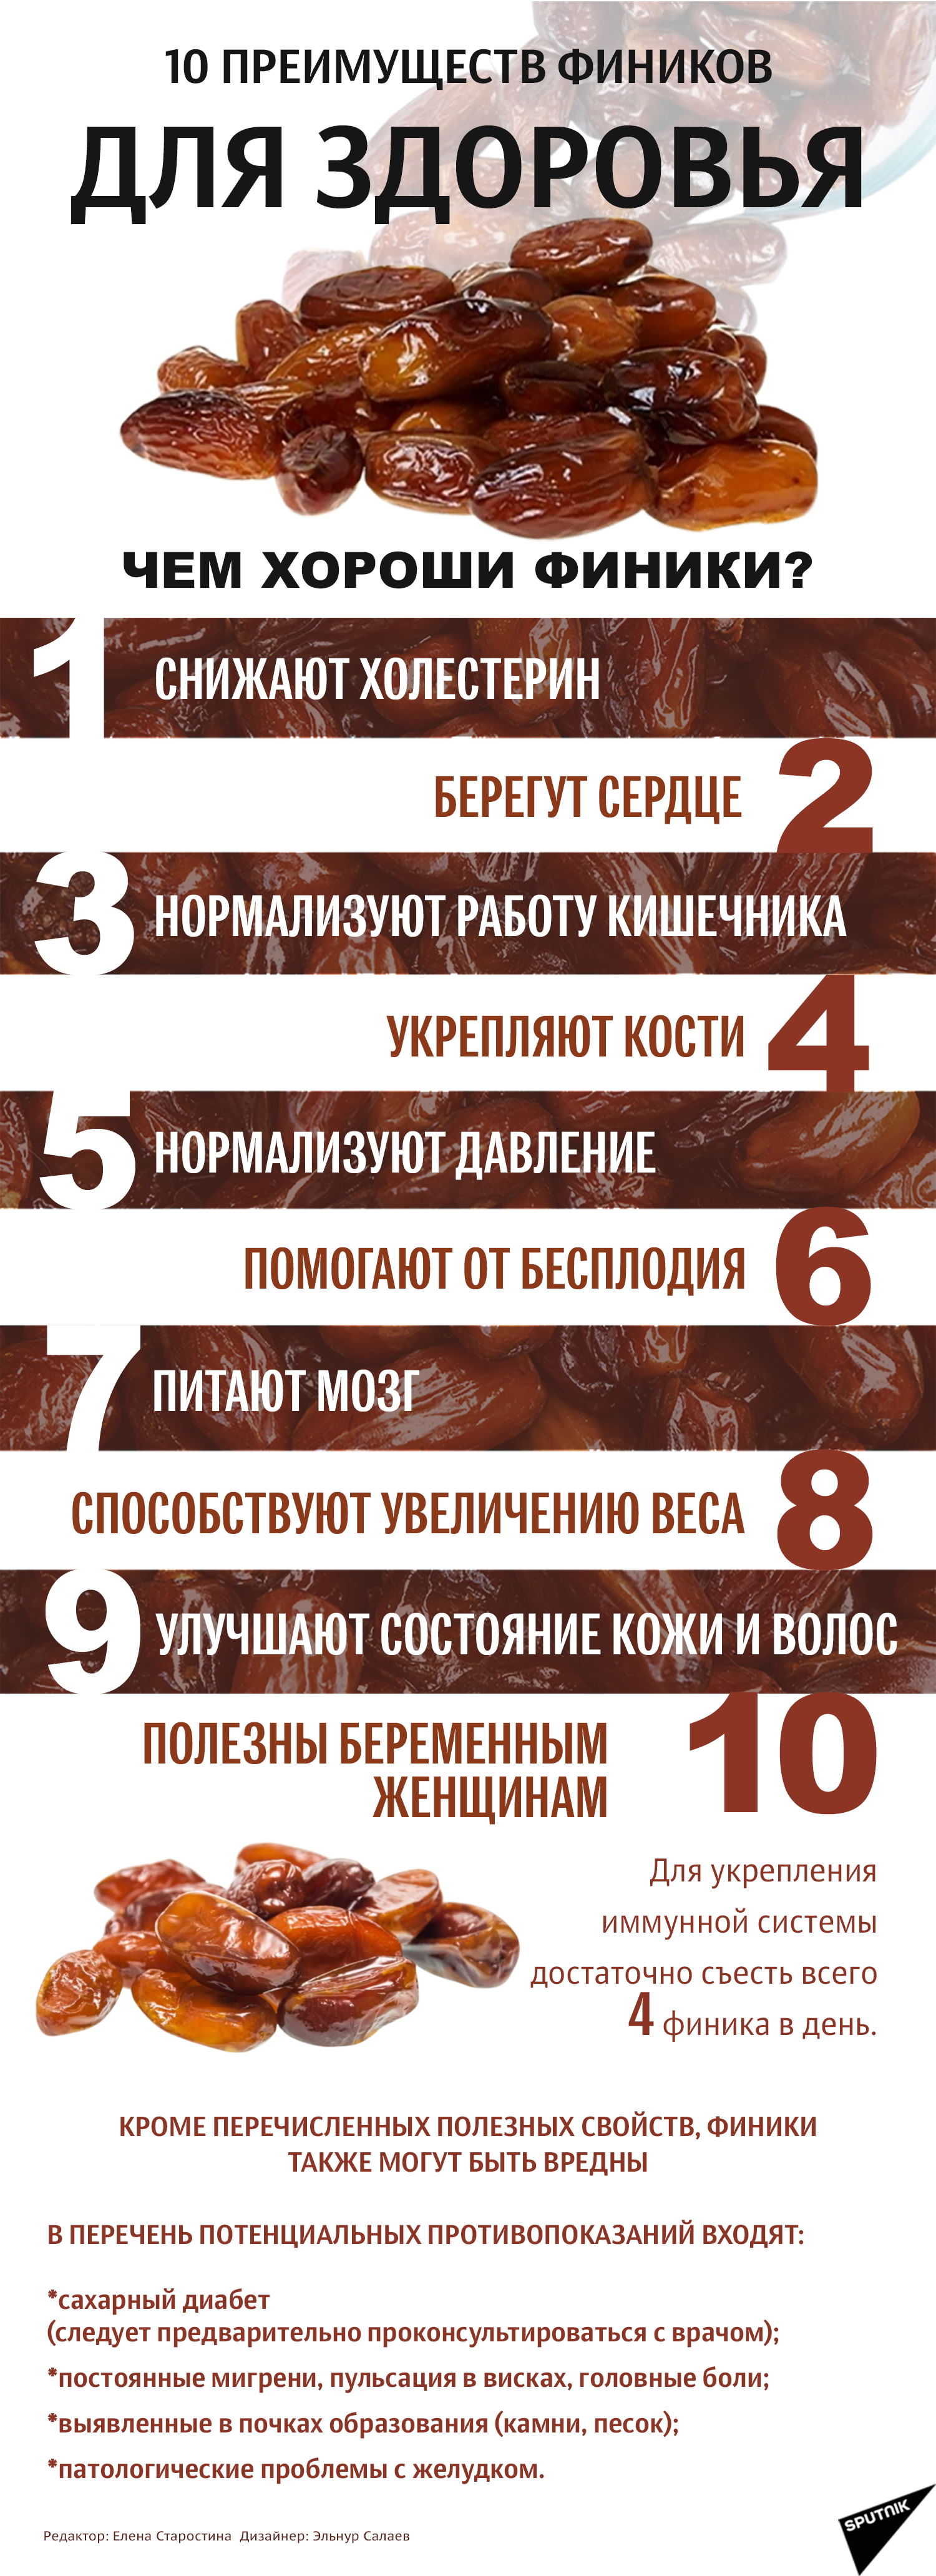 инфографика - 10 преимуществ фиников для здоровья - Sputnik Узбекистан